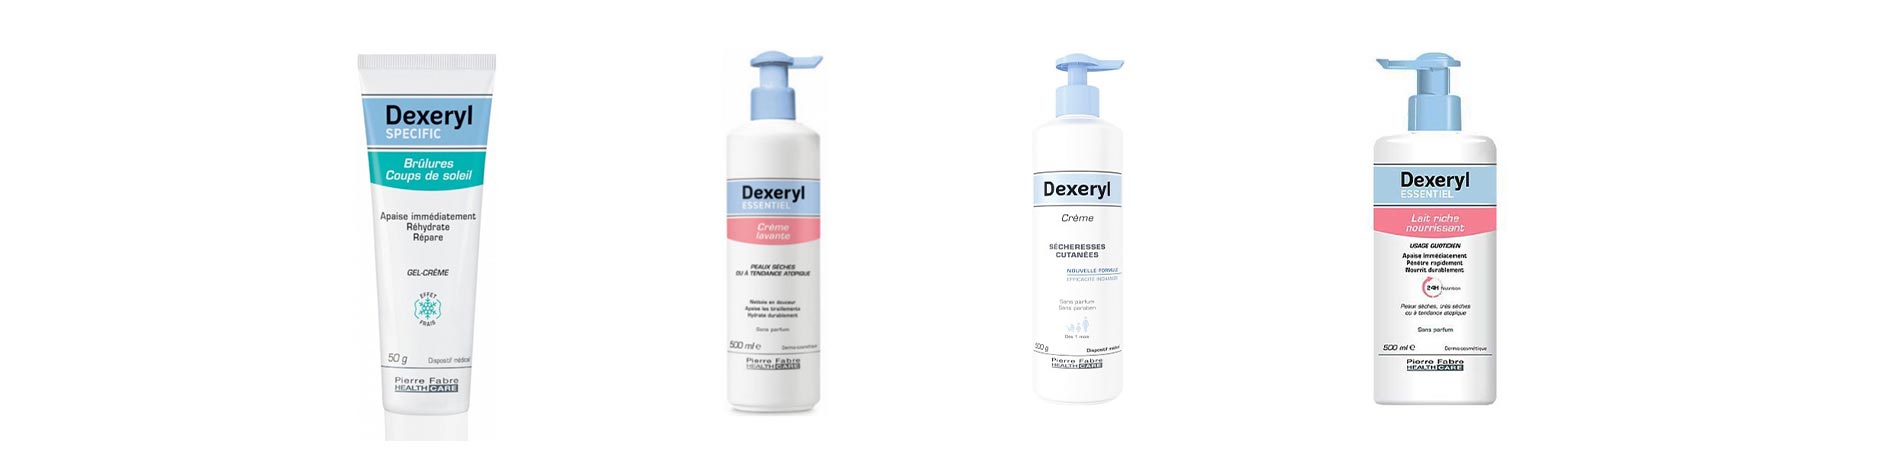 Les produits Dexeryl : Pour quels types de peaux ?